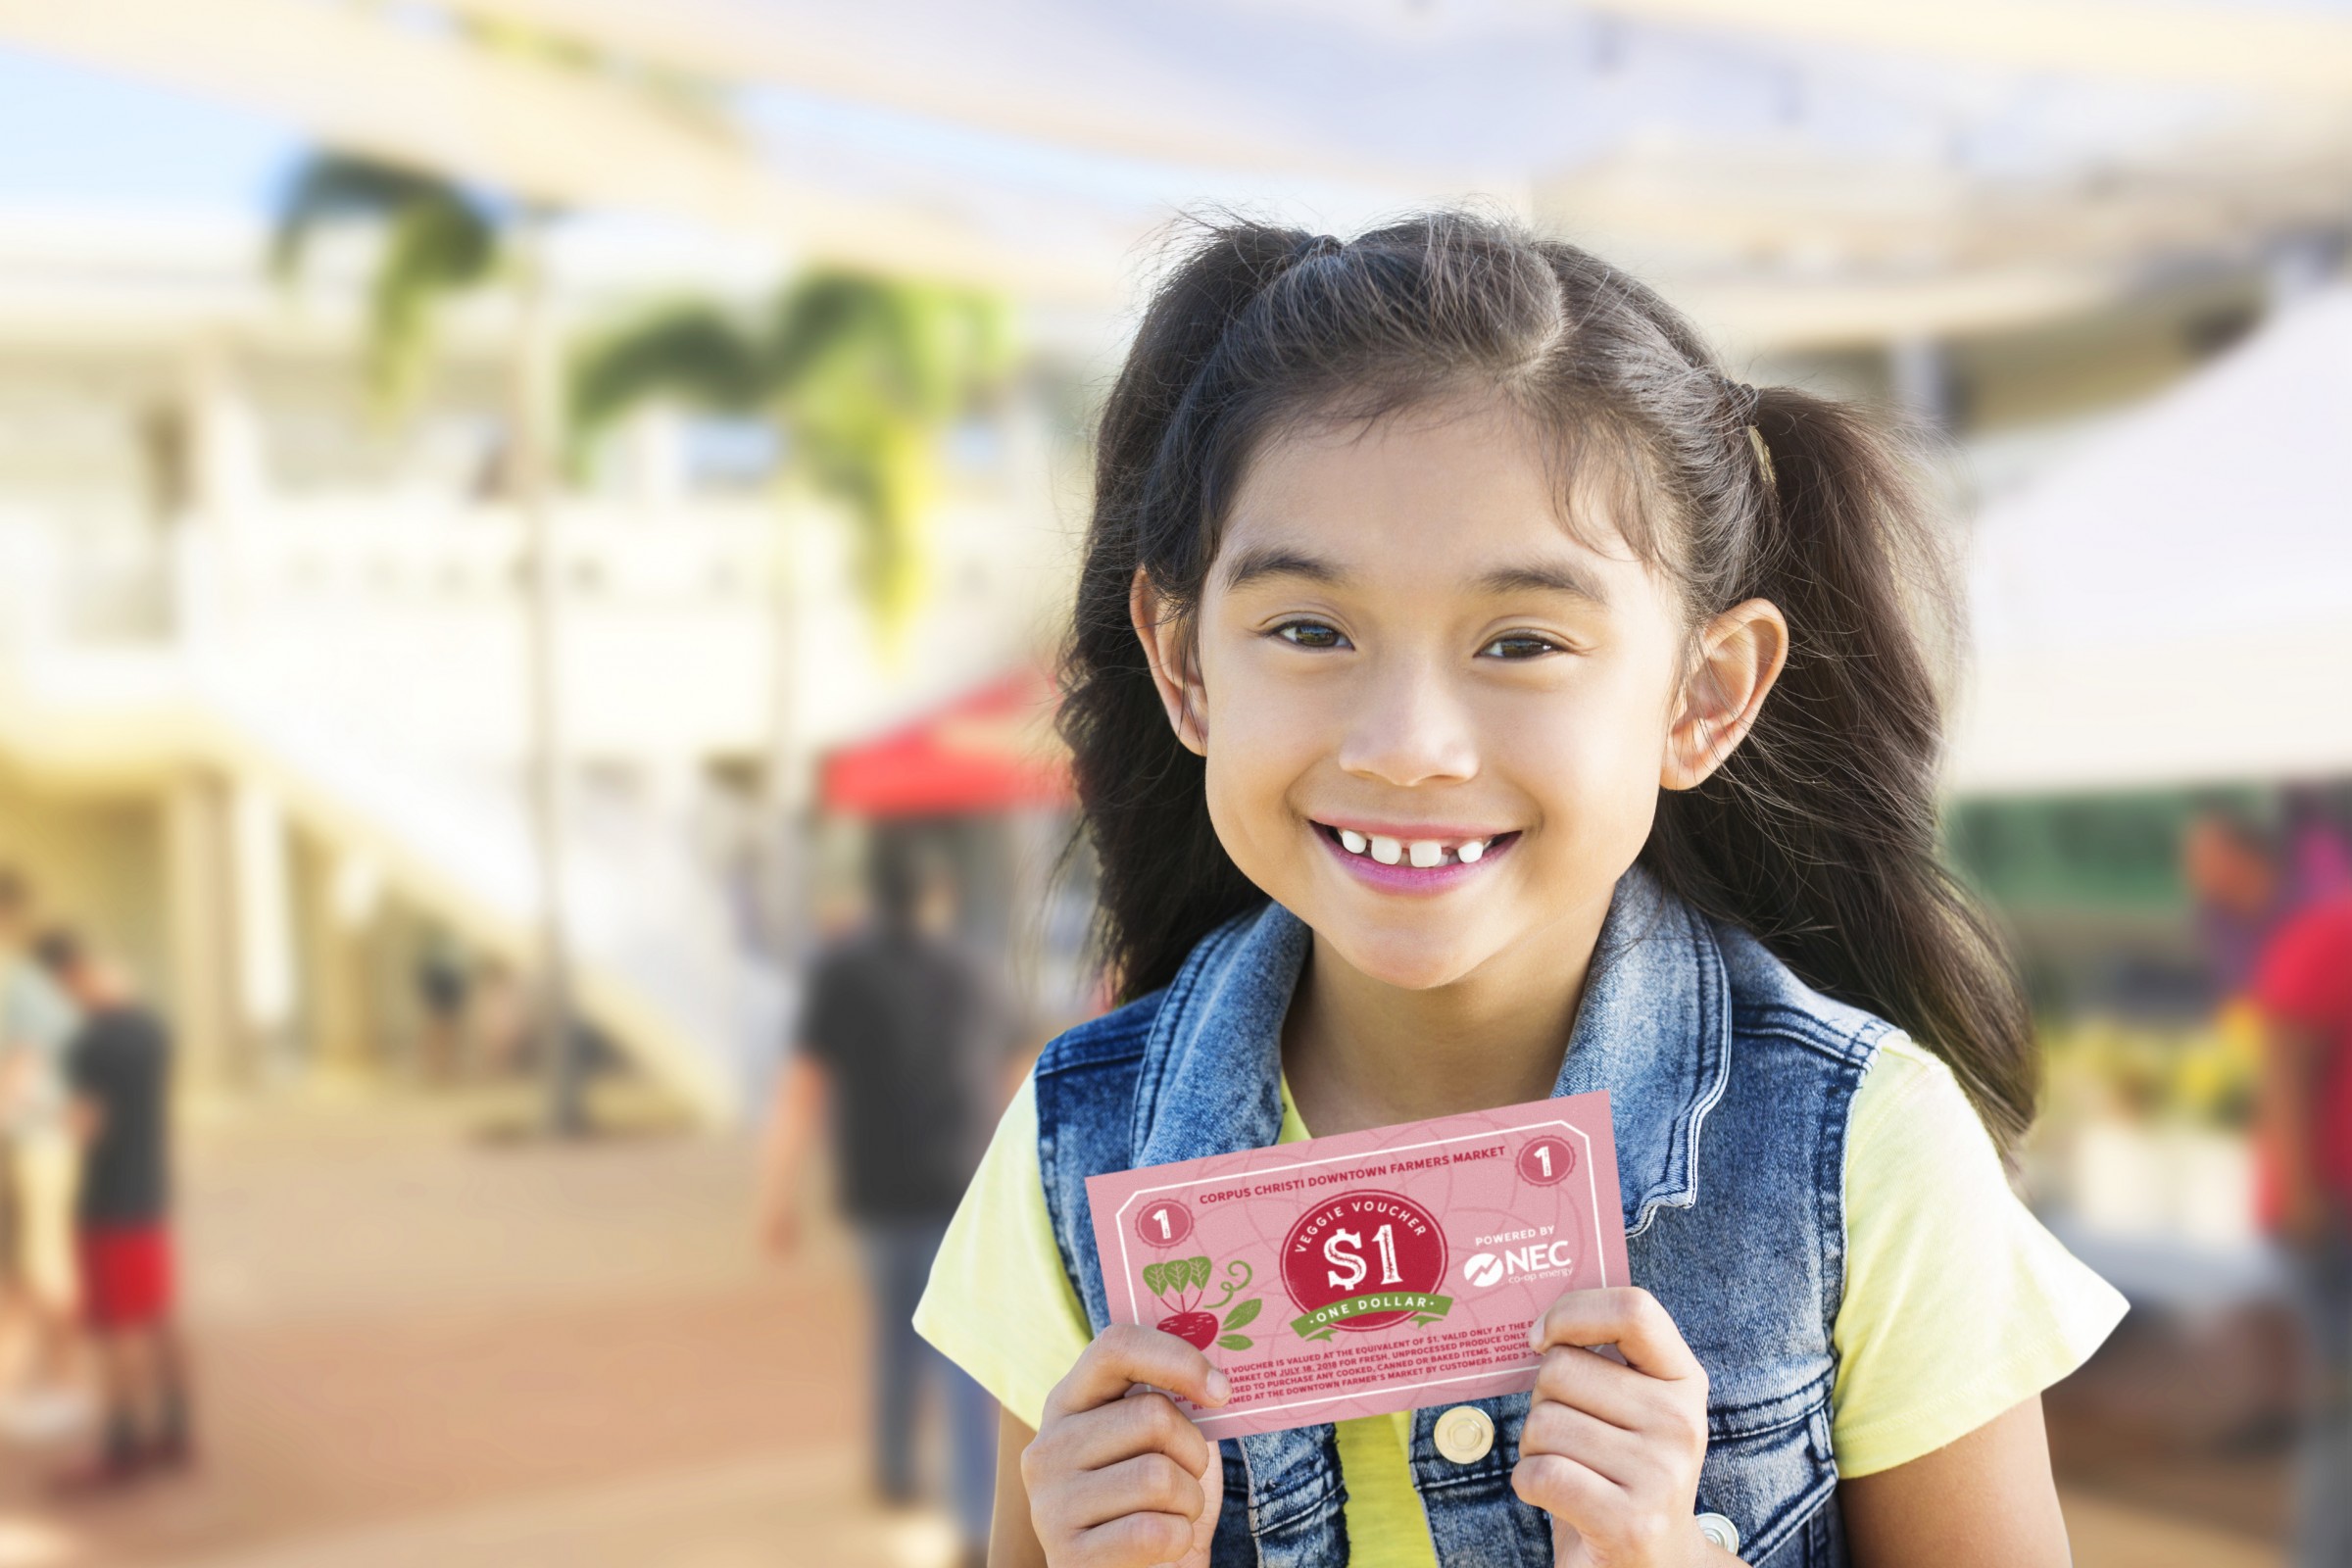 Showing a little girl holding the Farmer's Market veggie voucher.